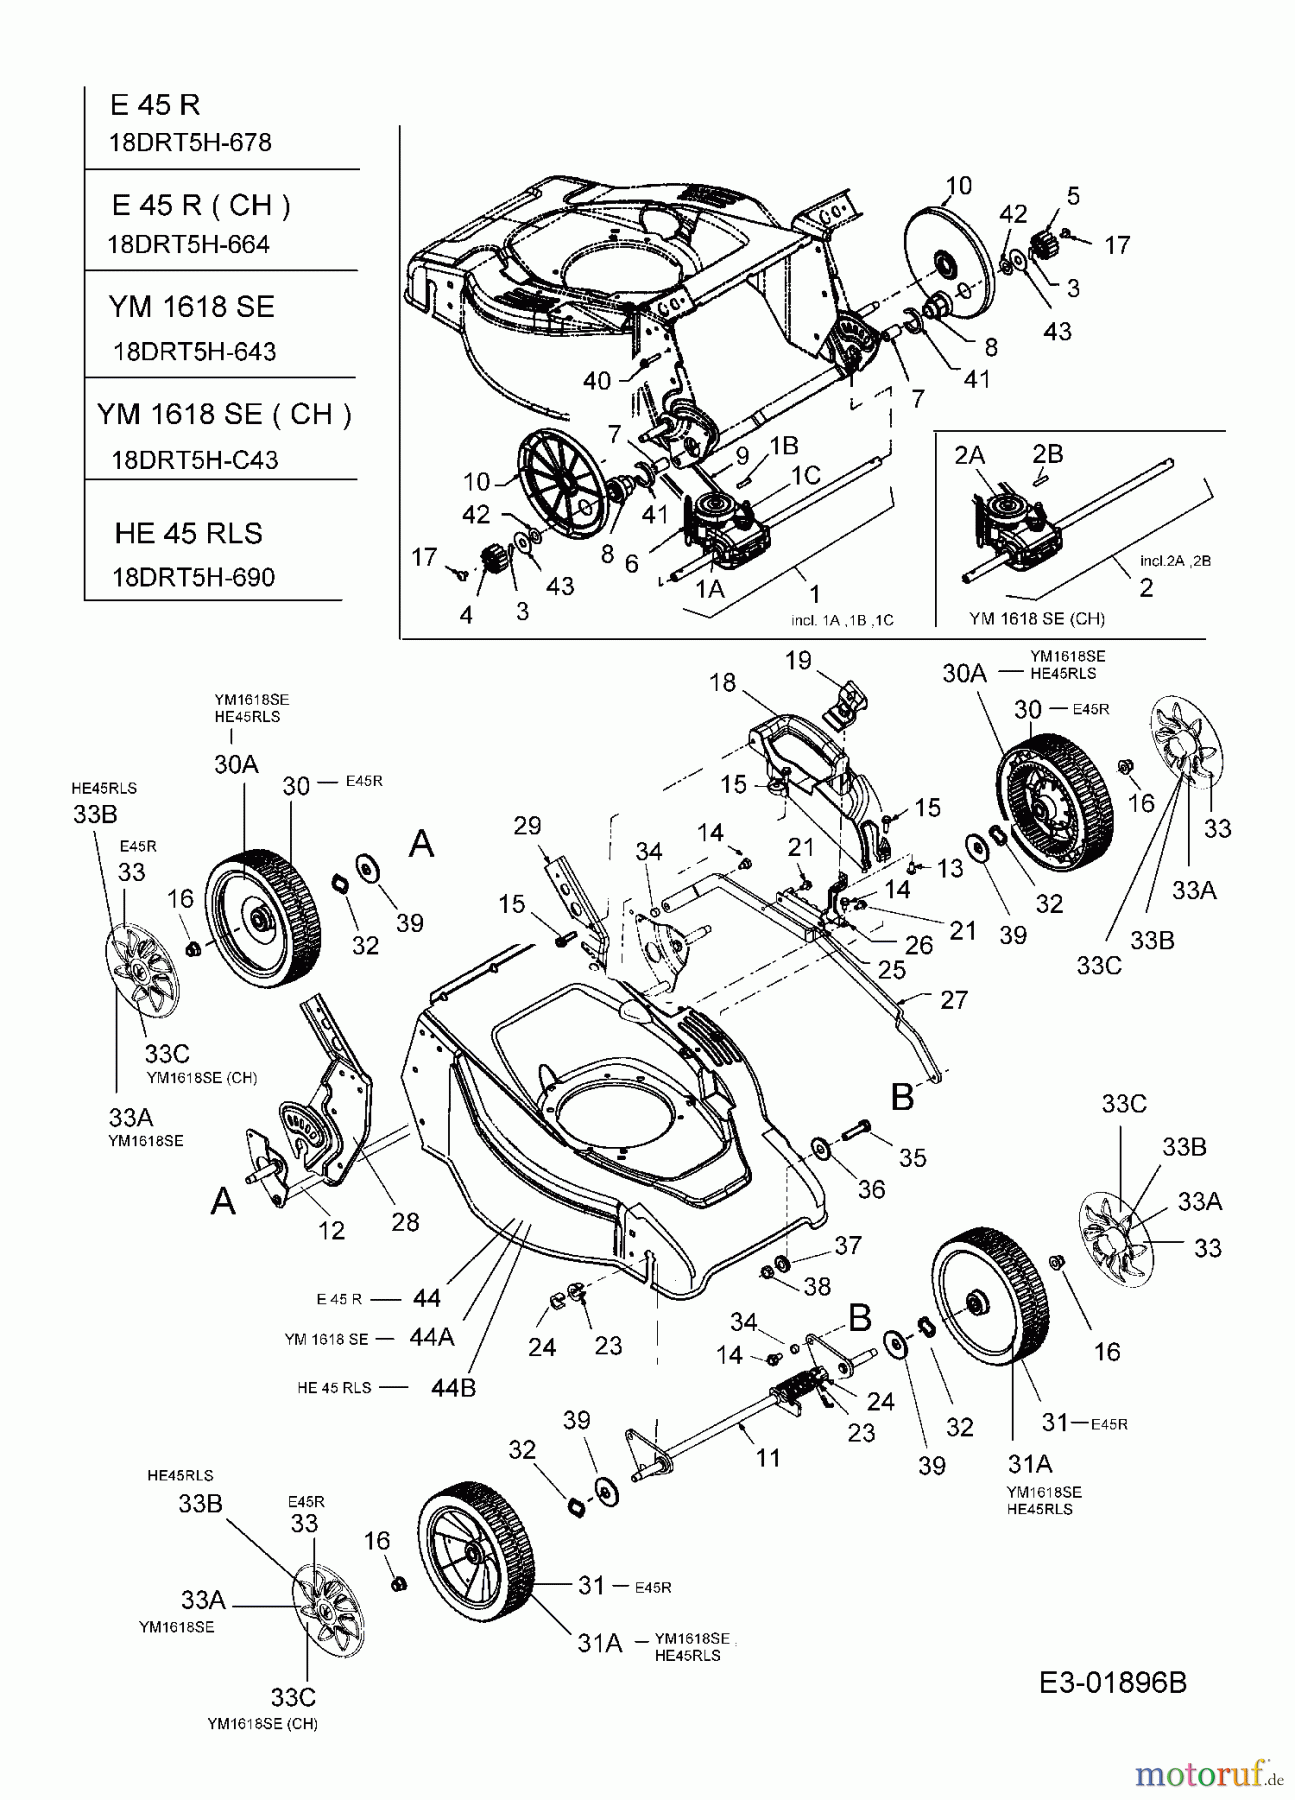  Gutbrod Elektromäher mit Antrieb HE 45 RLS 18DRT5H-690  (2005) Getriebe, Räder, Schnitthöhenverstellung